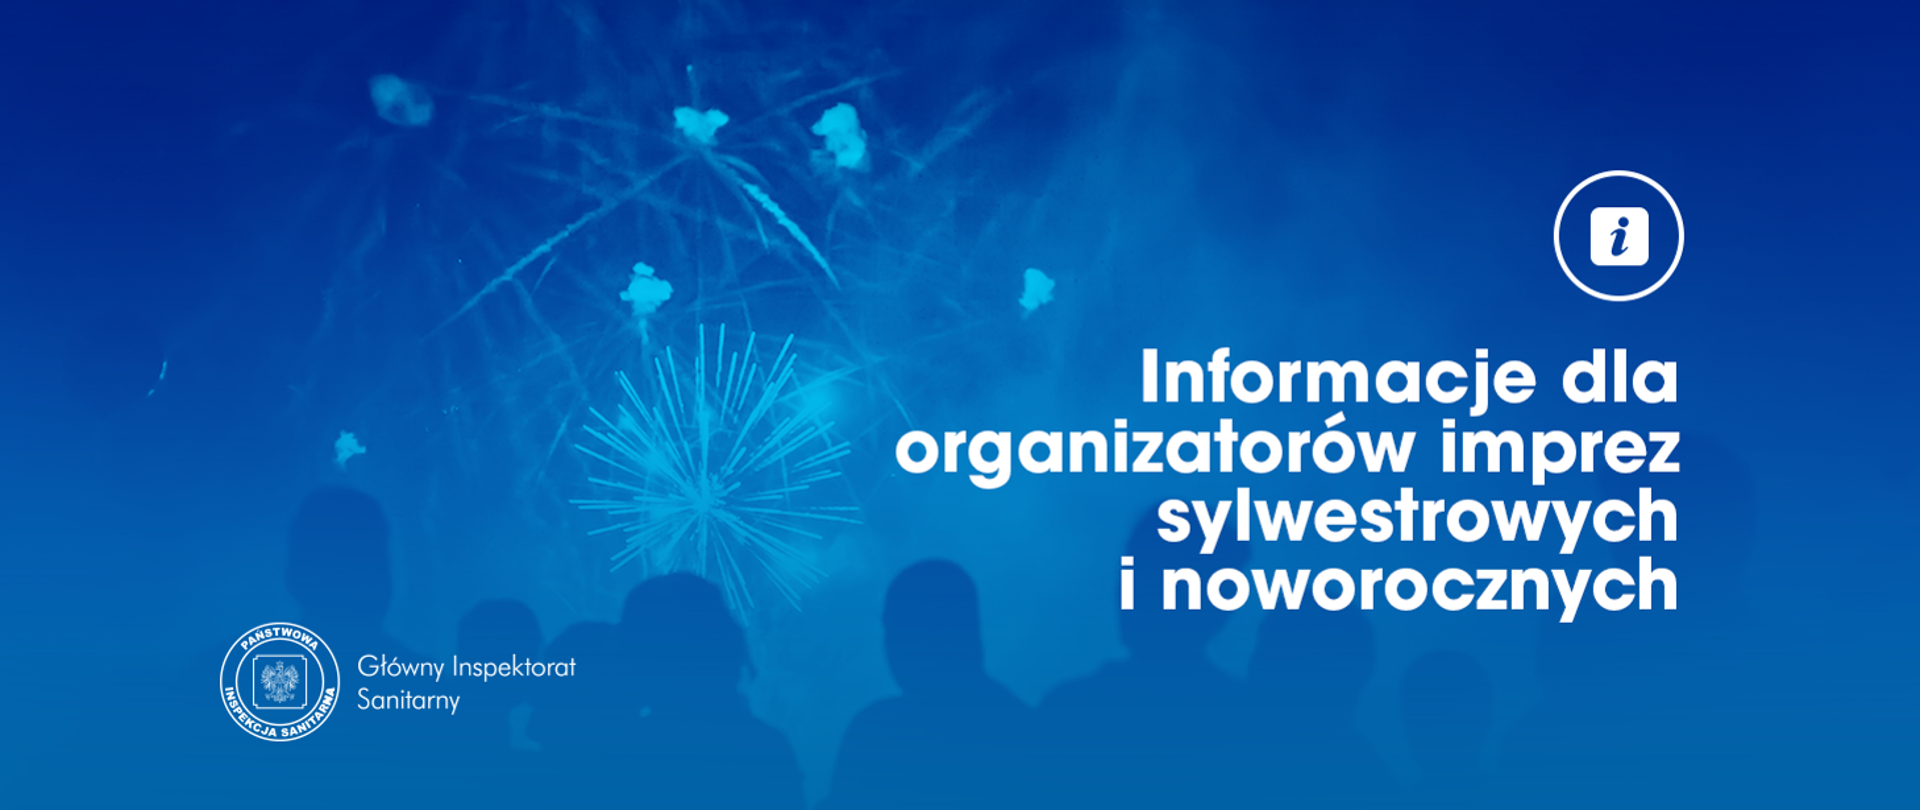 Informacje dla organizatorów imprez sylwestrowych i noworocznych w trakcie epidemii wirusa SARS-CoV-2 w Polsce